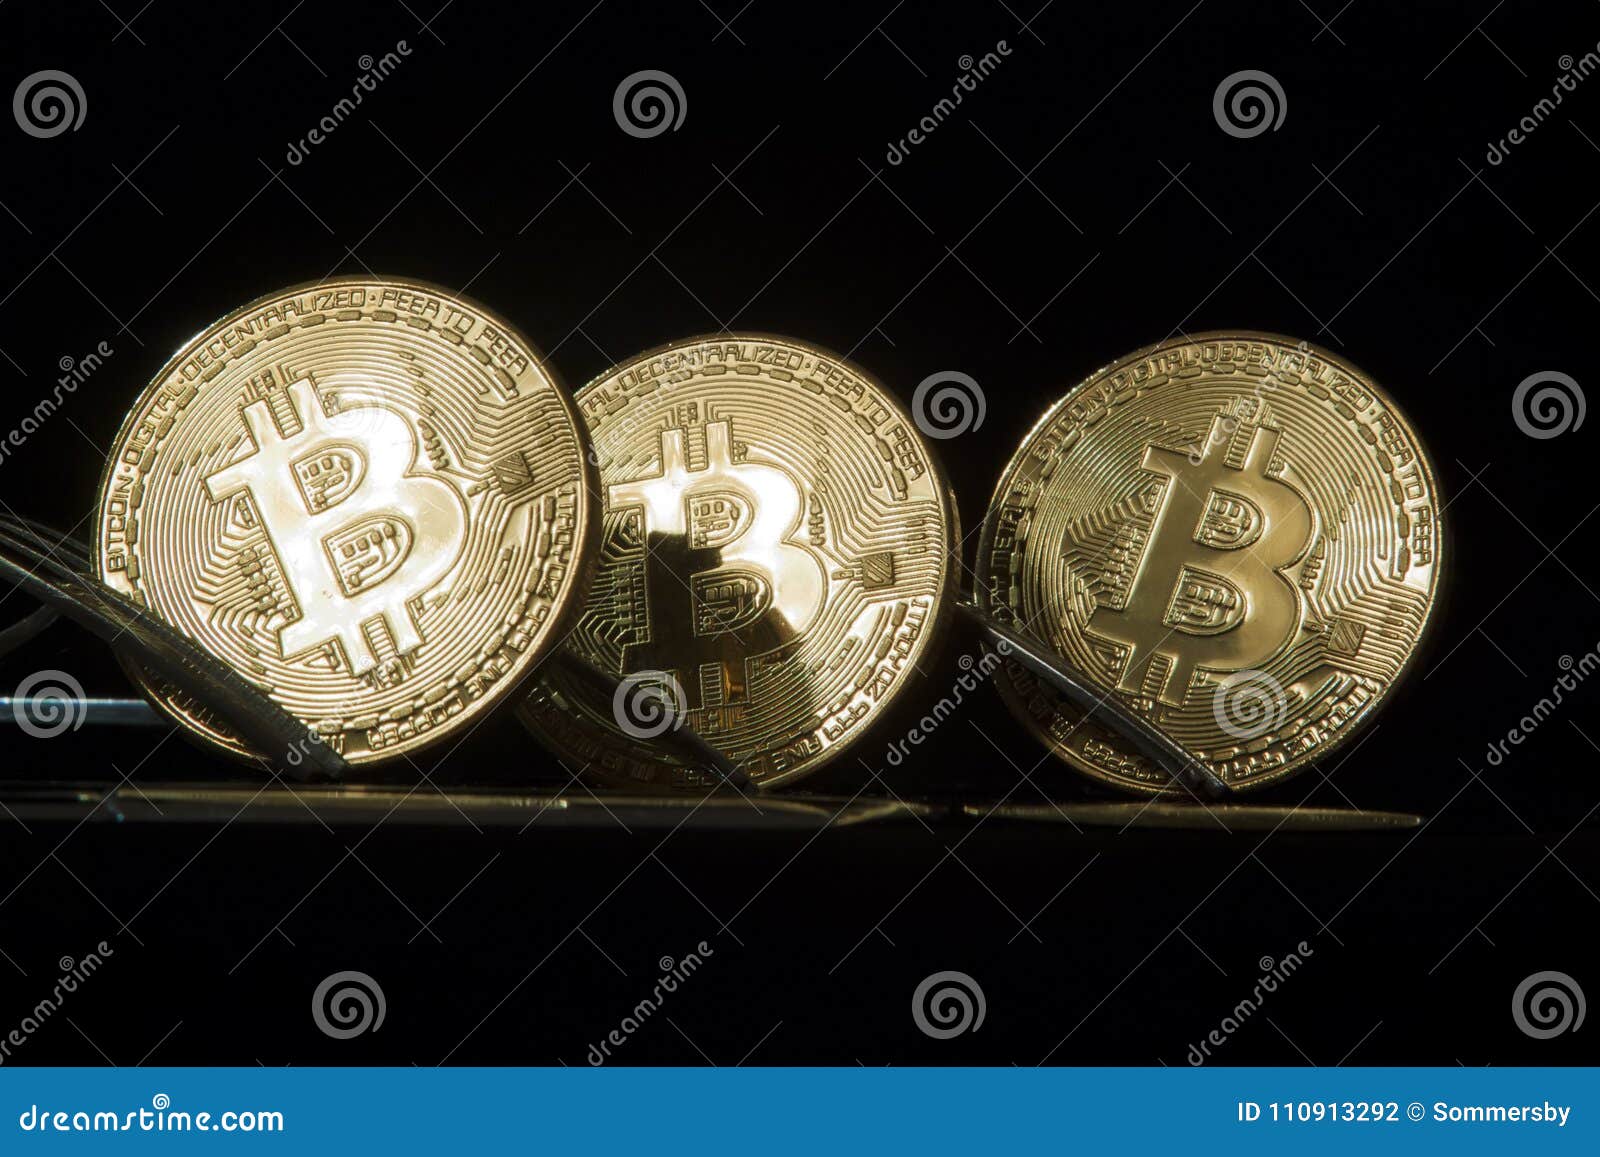 3 bitcoin forks